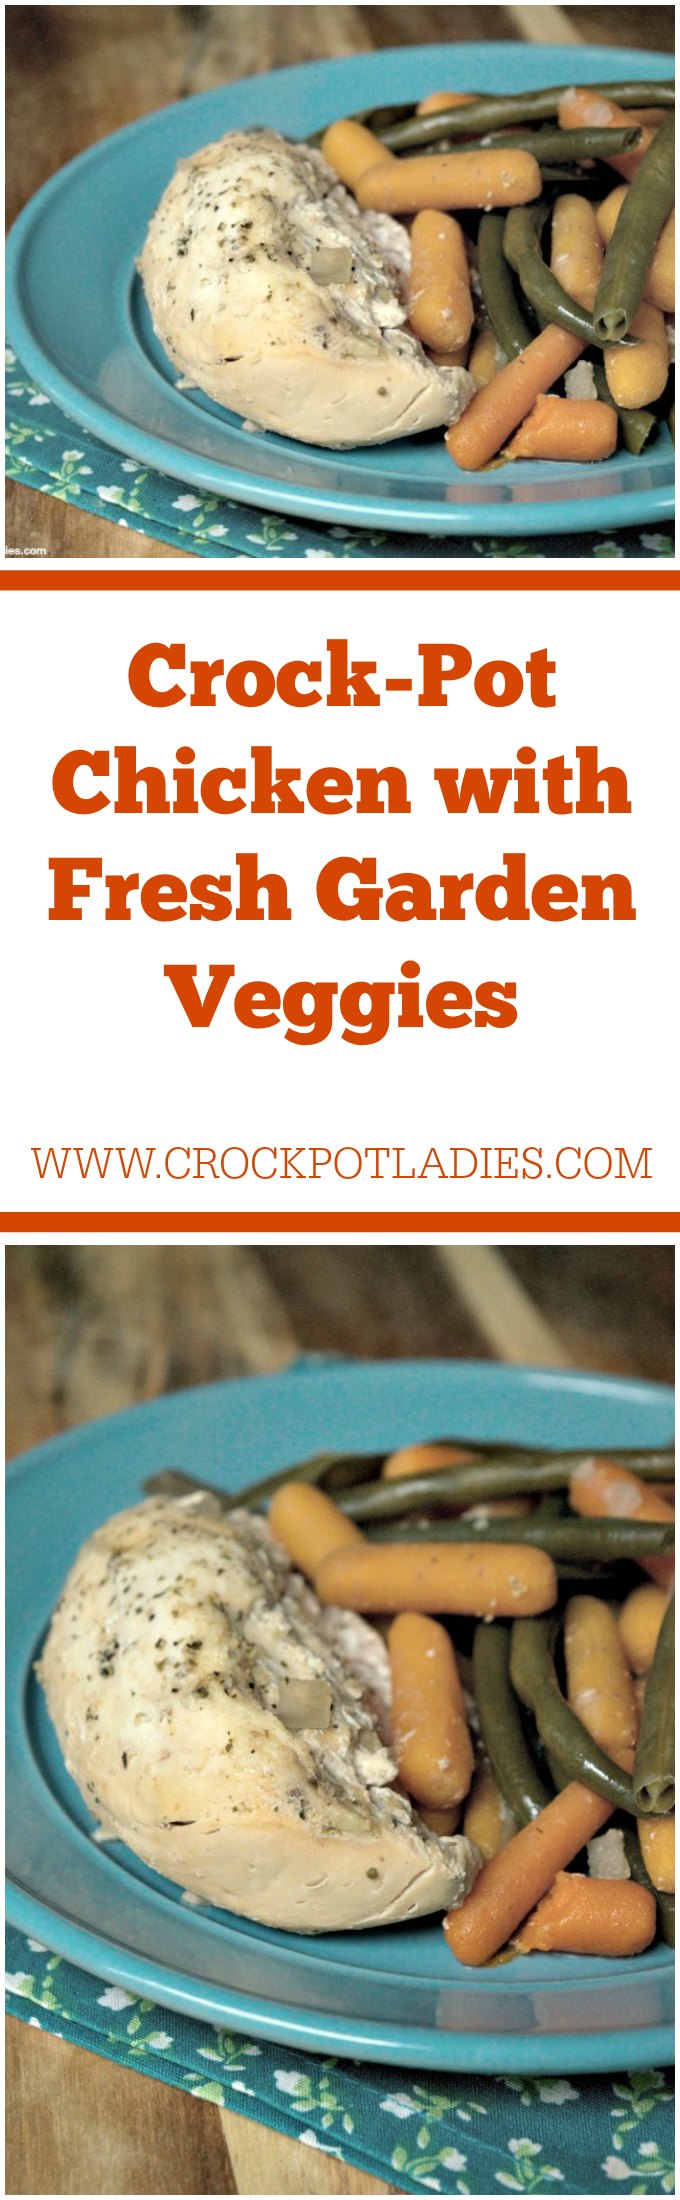 Crock-Pot Chicken with Fresh Garden Veggies